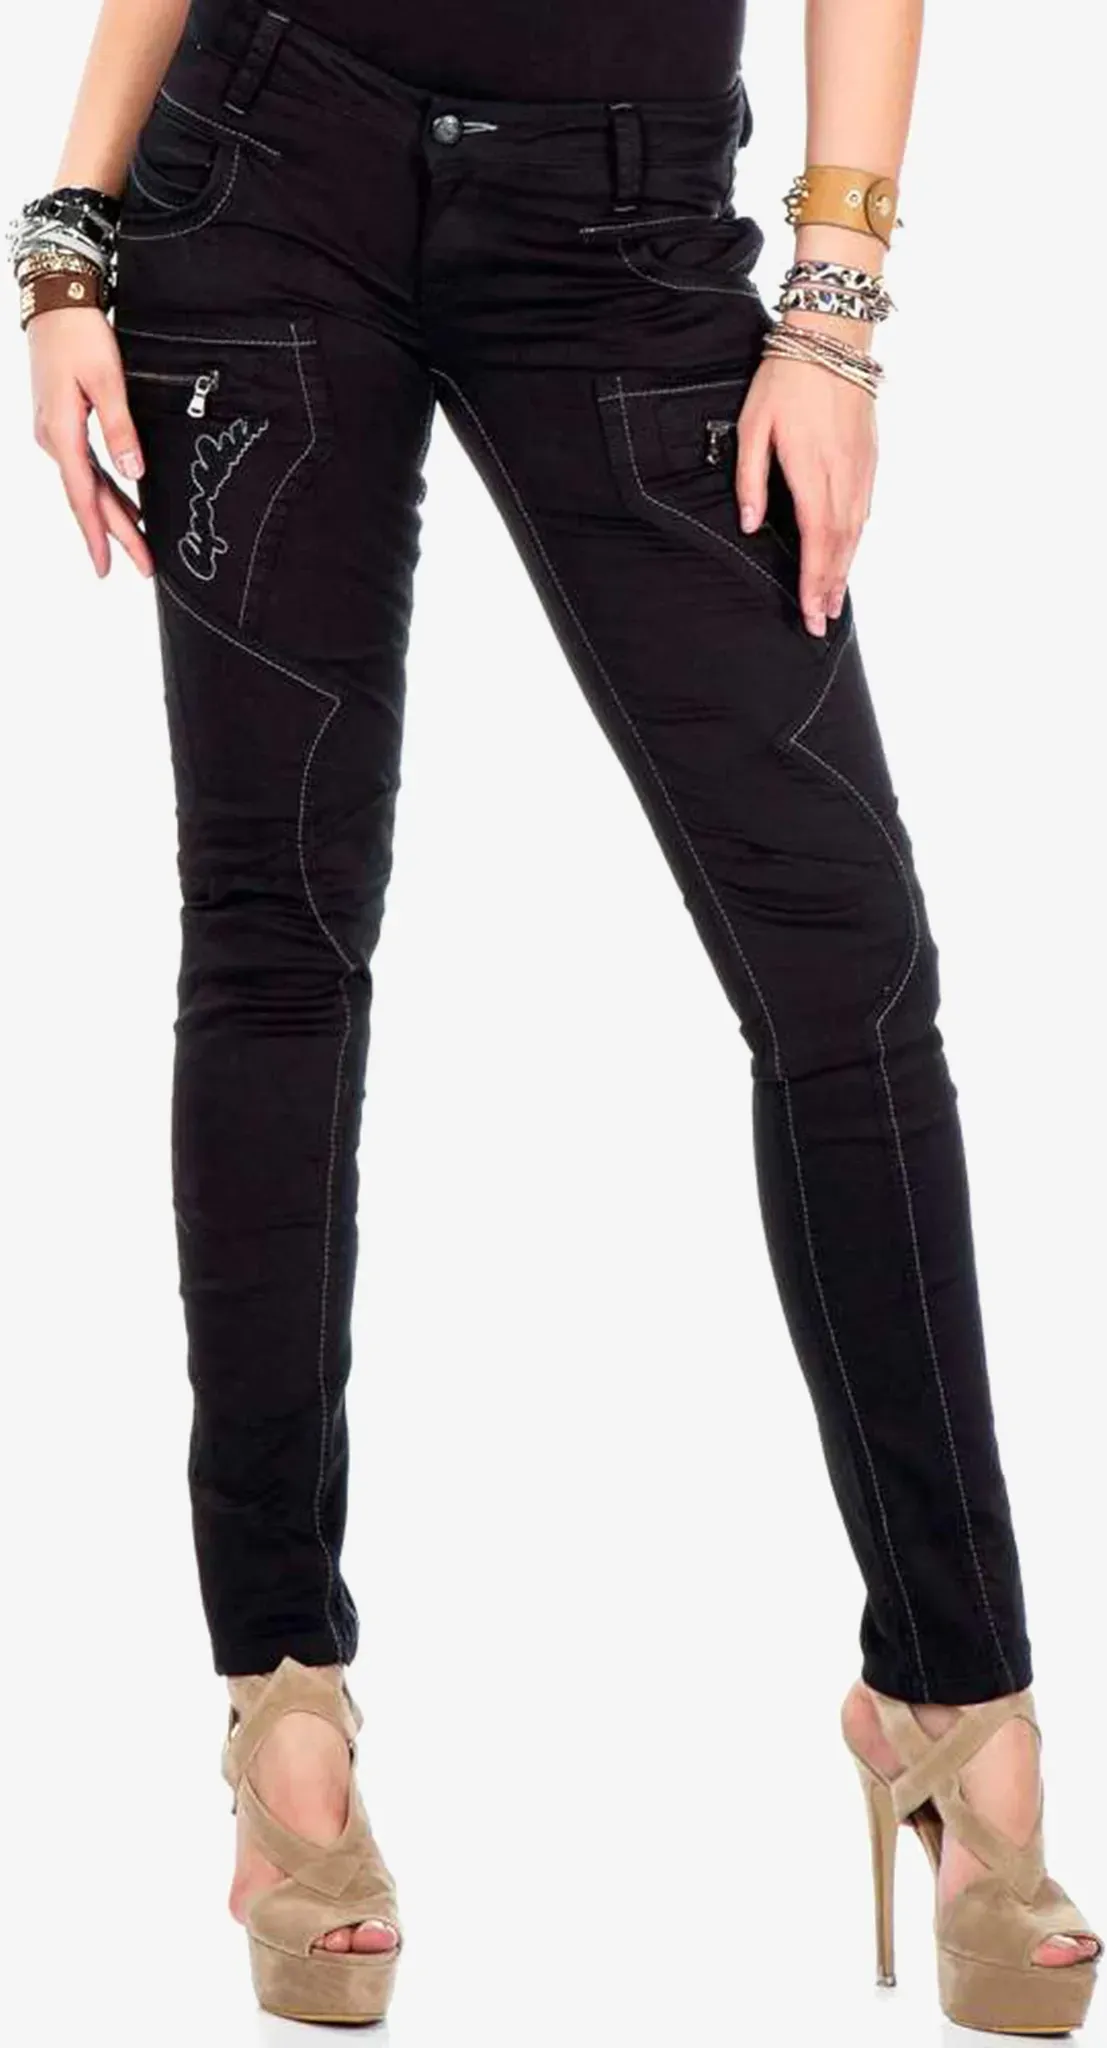 Slim-fit-Jeans CIPO & BAXX Gr. 26, Länge 34, schwarz Damen Jeans Röhrenjeans mit ausgefallenen Ziernähten